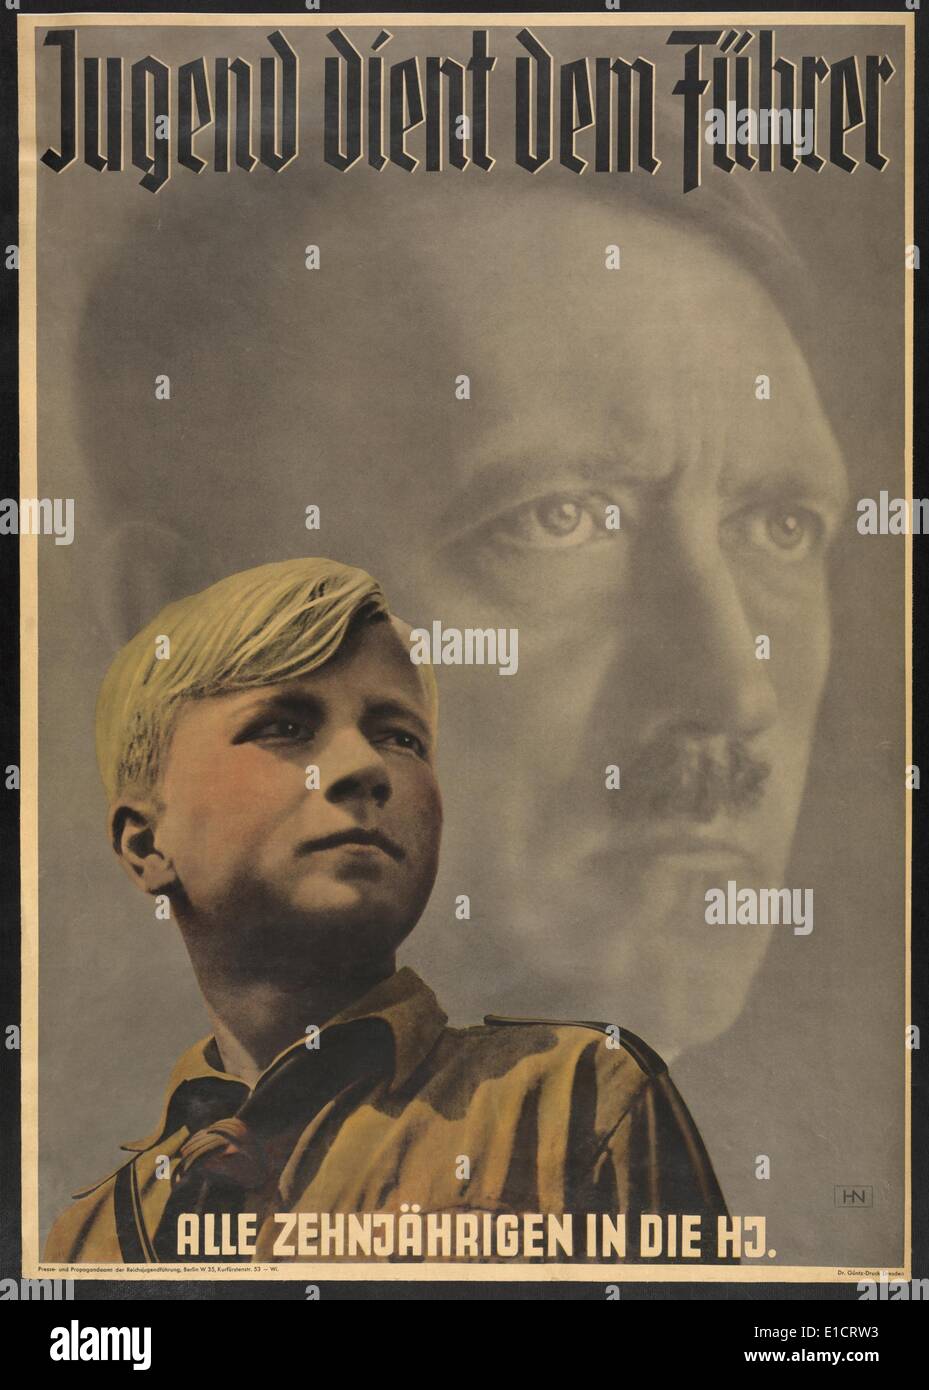 "La Juventud sirve el líder - todos los diez años en las Juventudes Hitlerianas". Cartel muestra joven alemán vistiendo uniformes, con la Juventud de Hitler Foto de stock